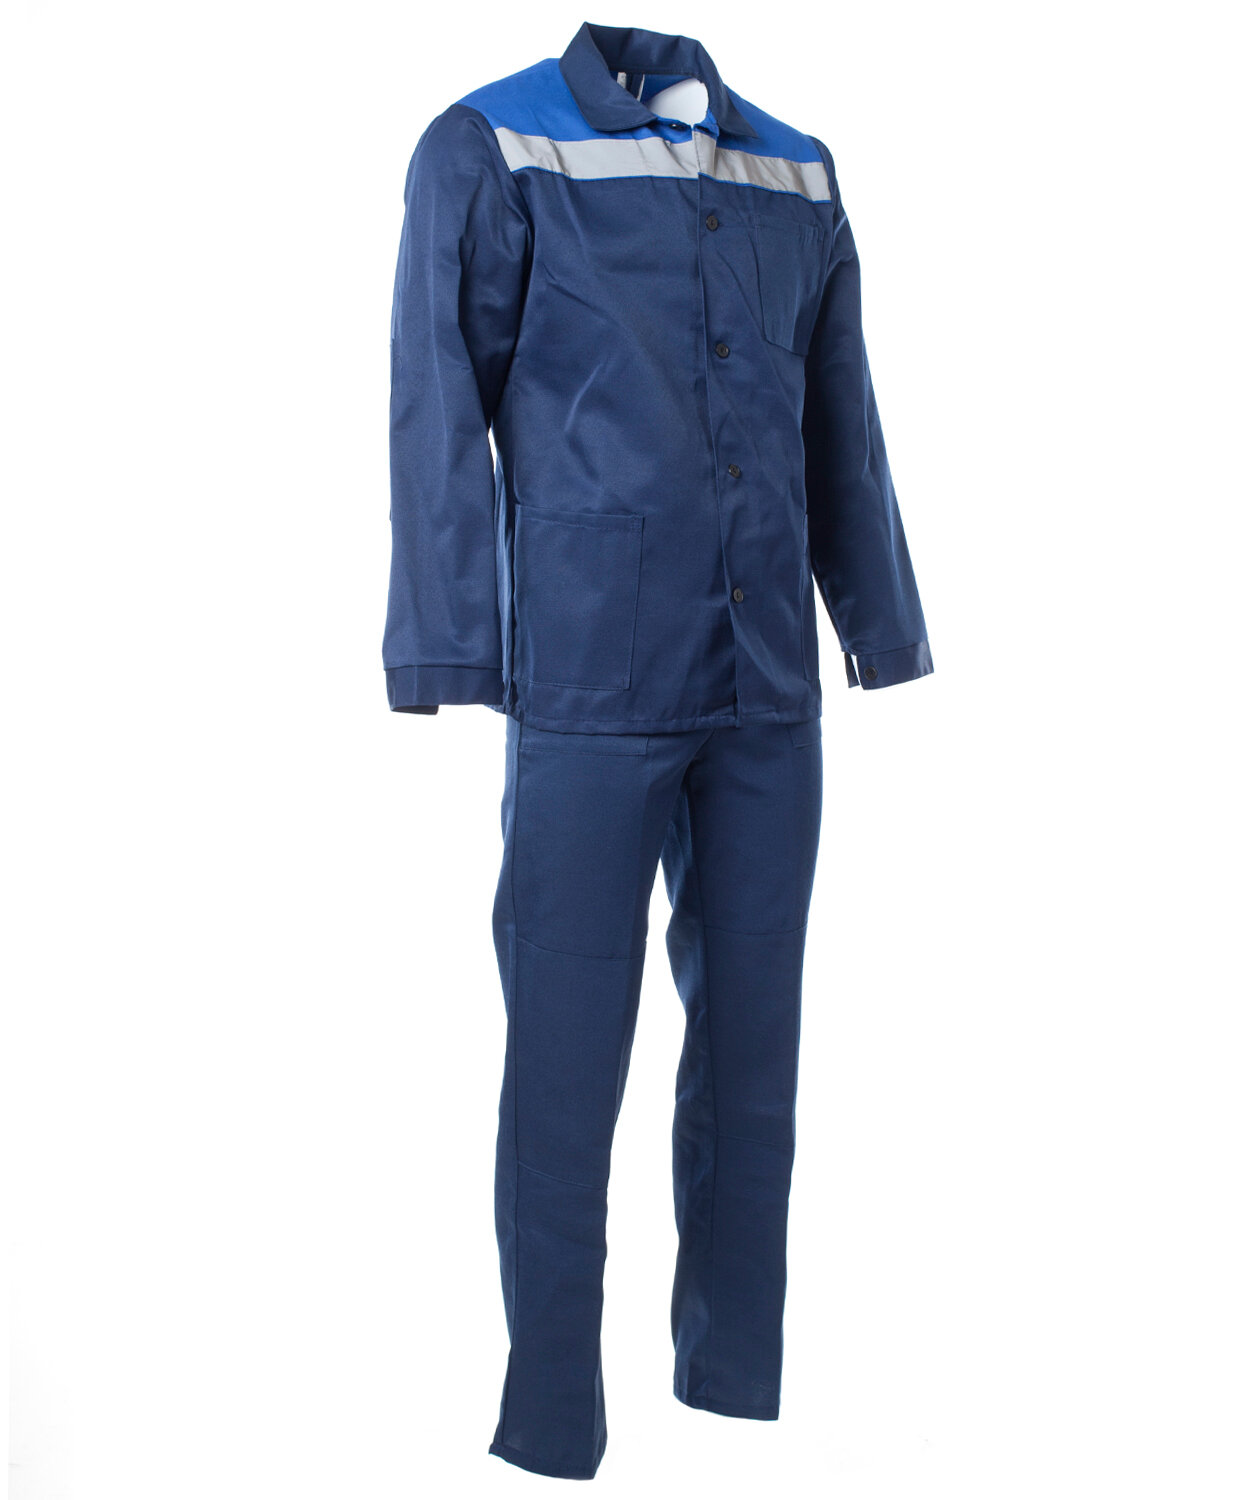 Костюм мужской «Стандарт» с СОП куртка, брюки цвет: т. синий, васильковый (52-54)104-108, 182-188